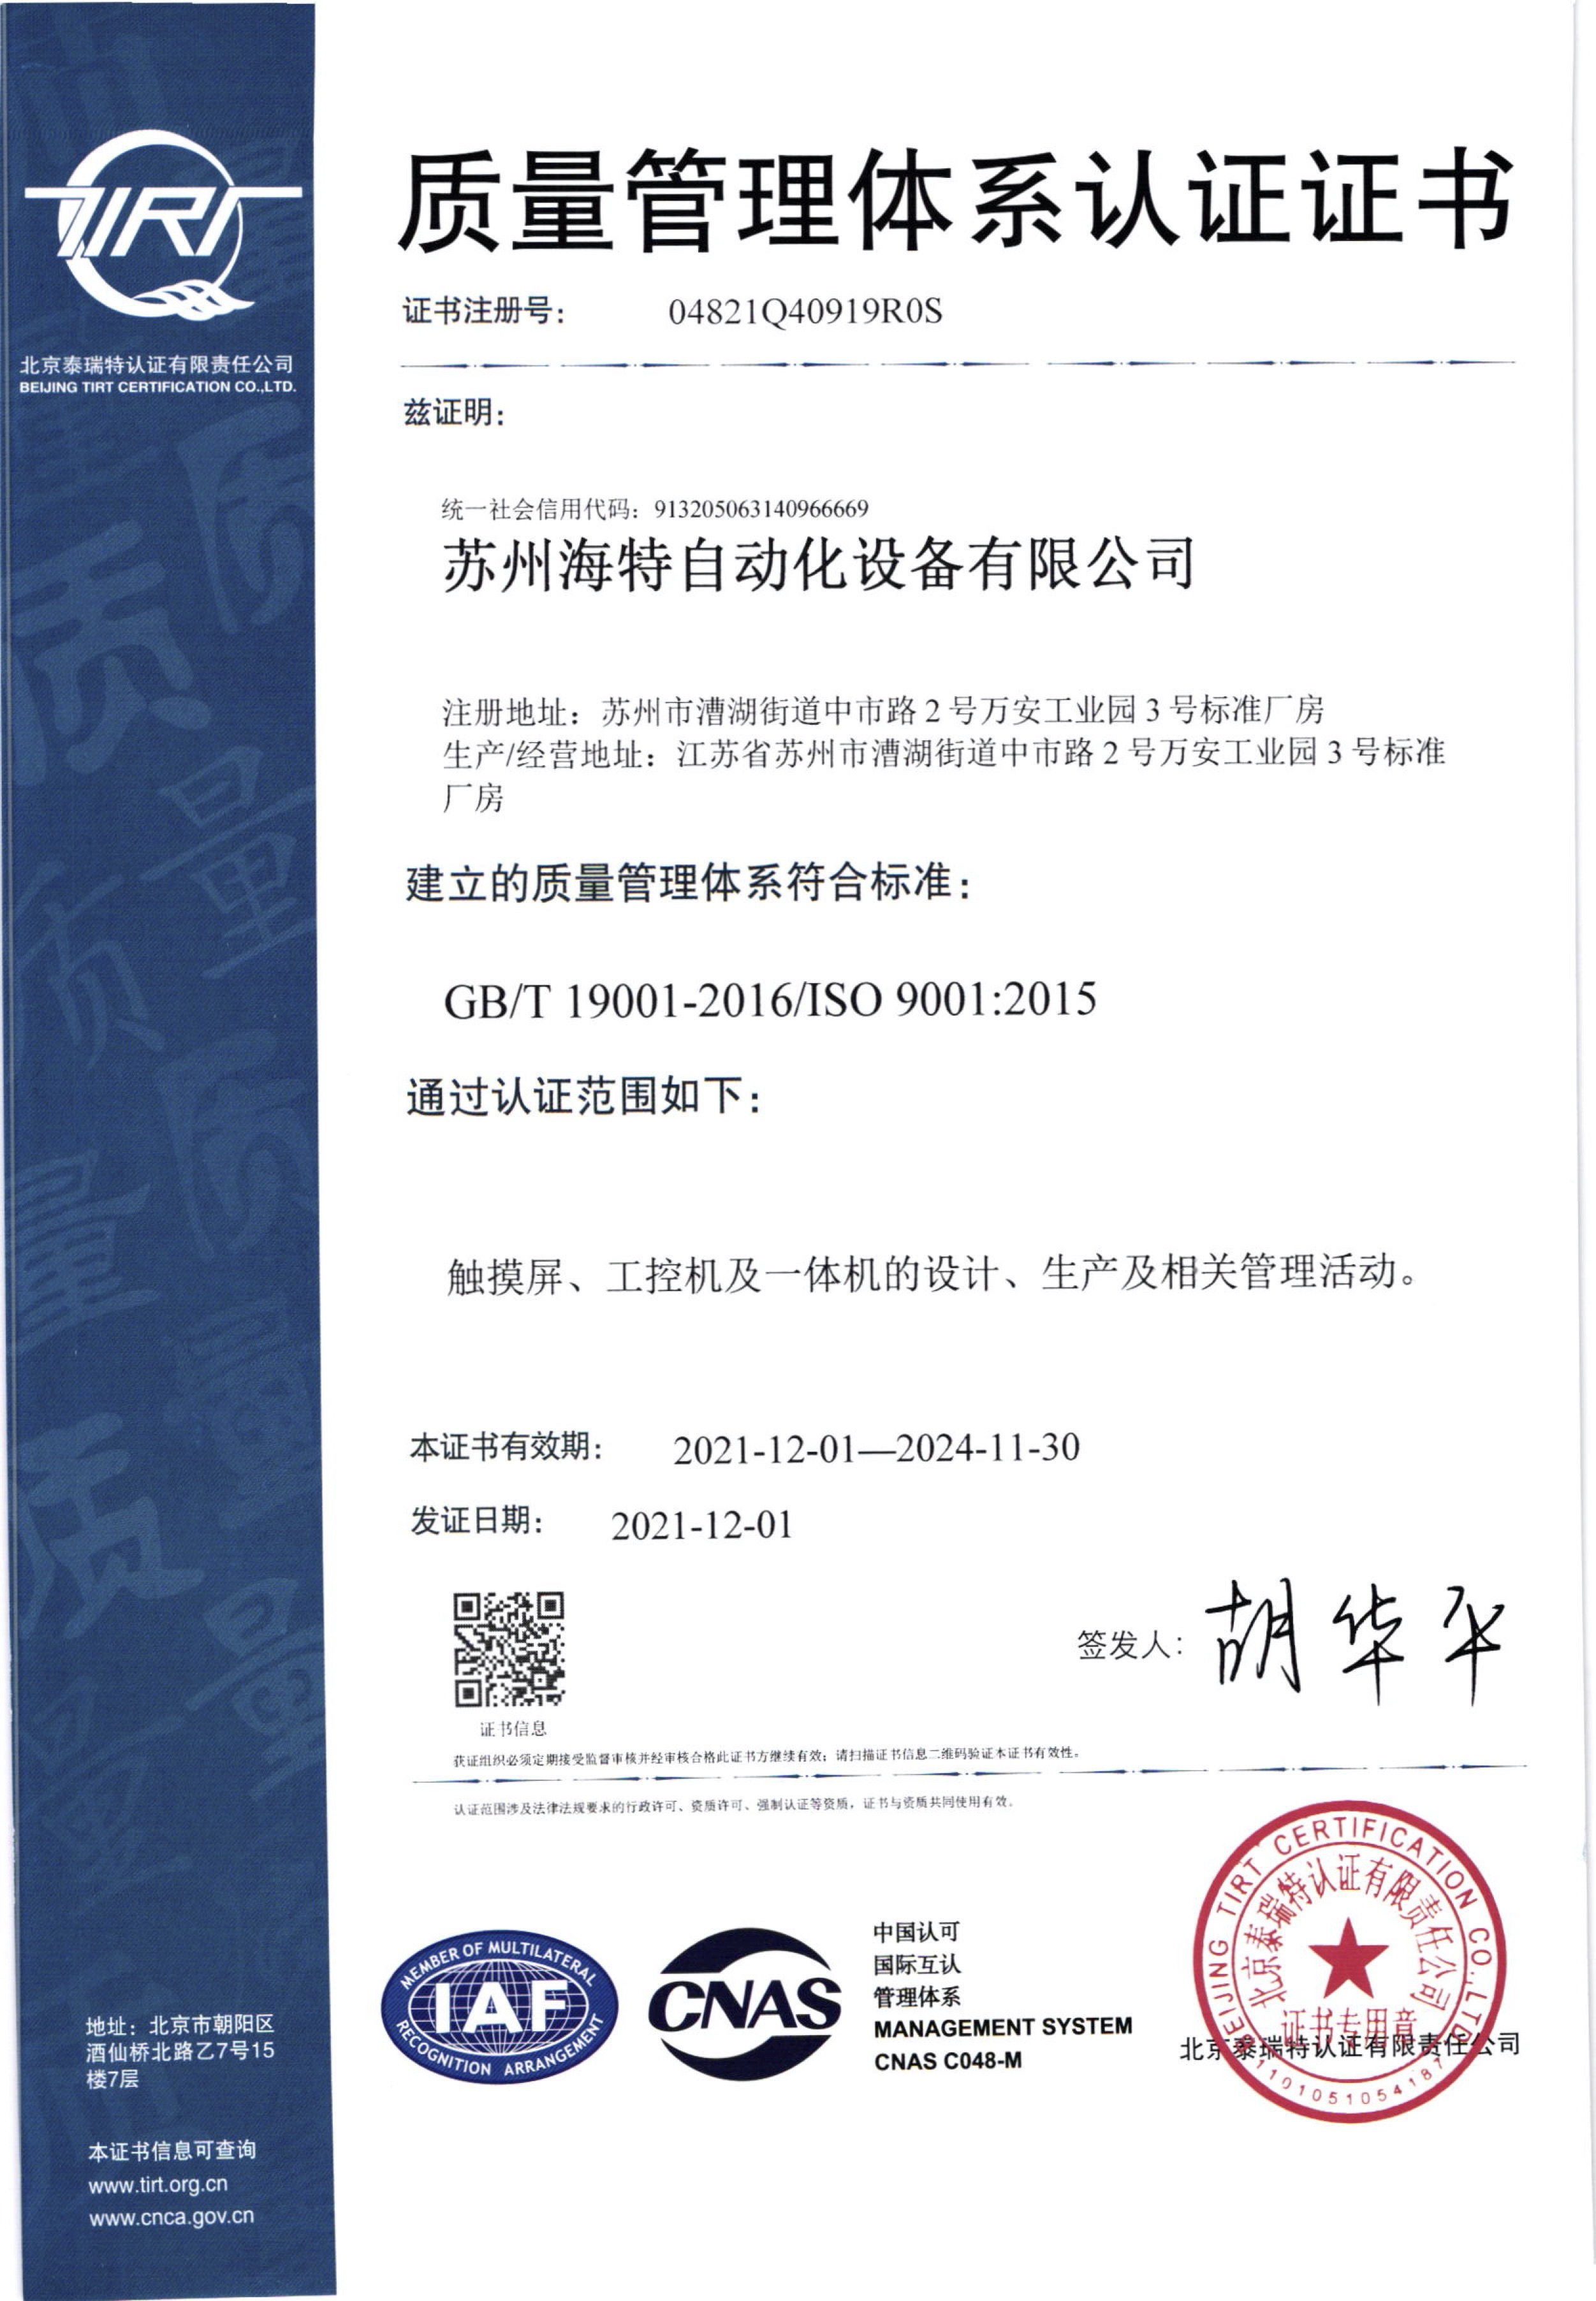 Suzhou Haite ISO9001 Certificate